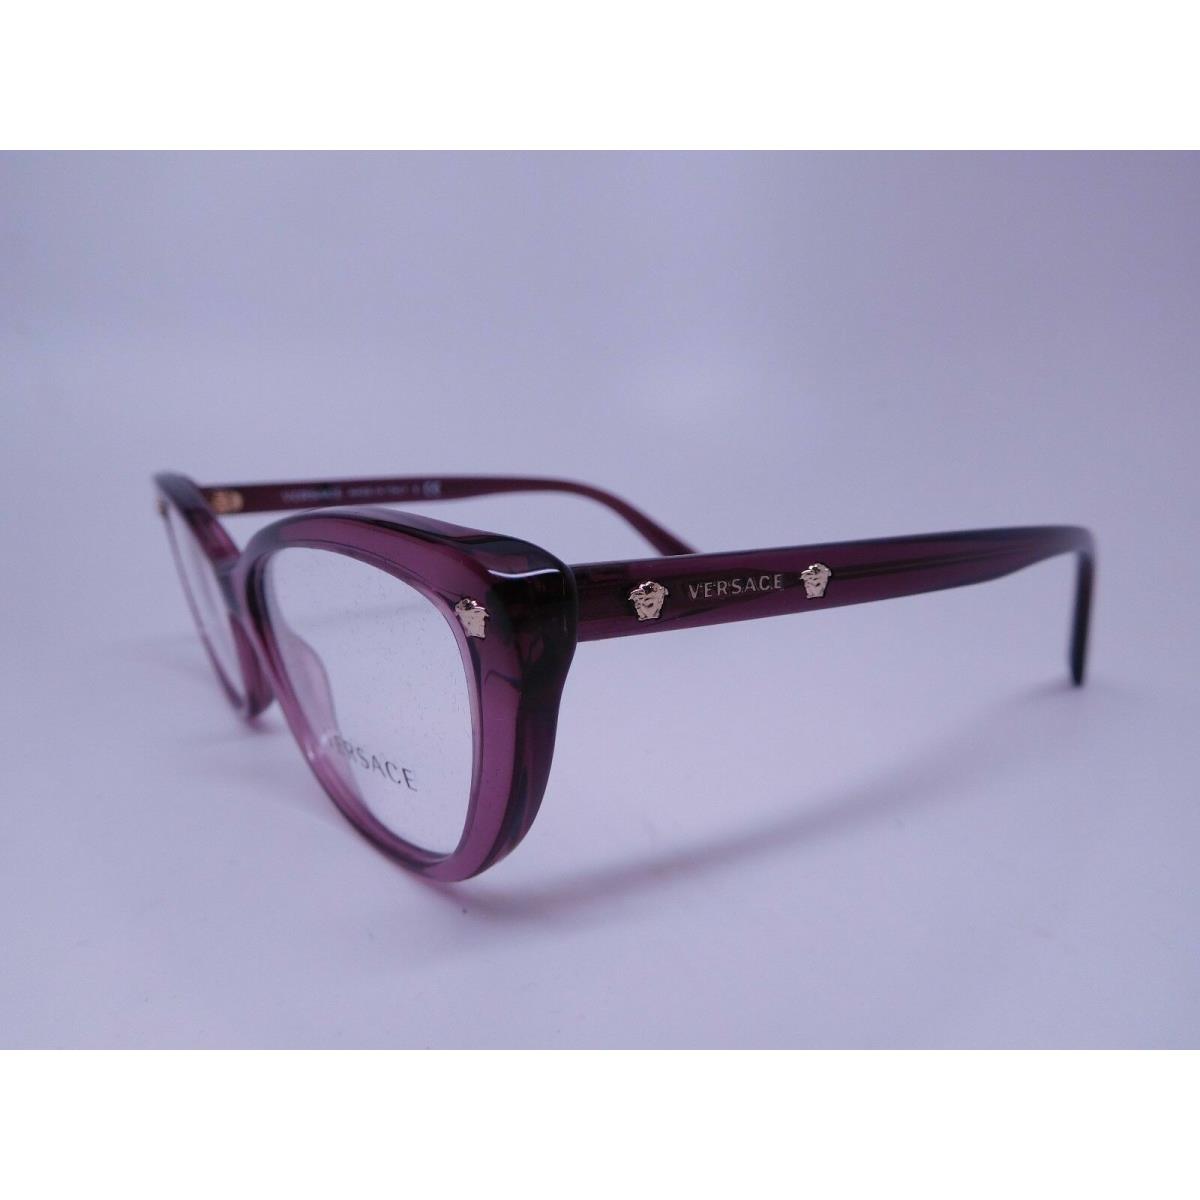 Versace eyeglasses  - Purple Frame 7